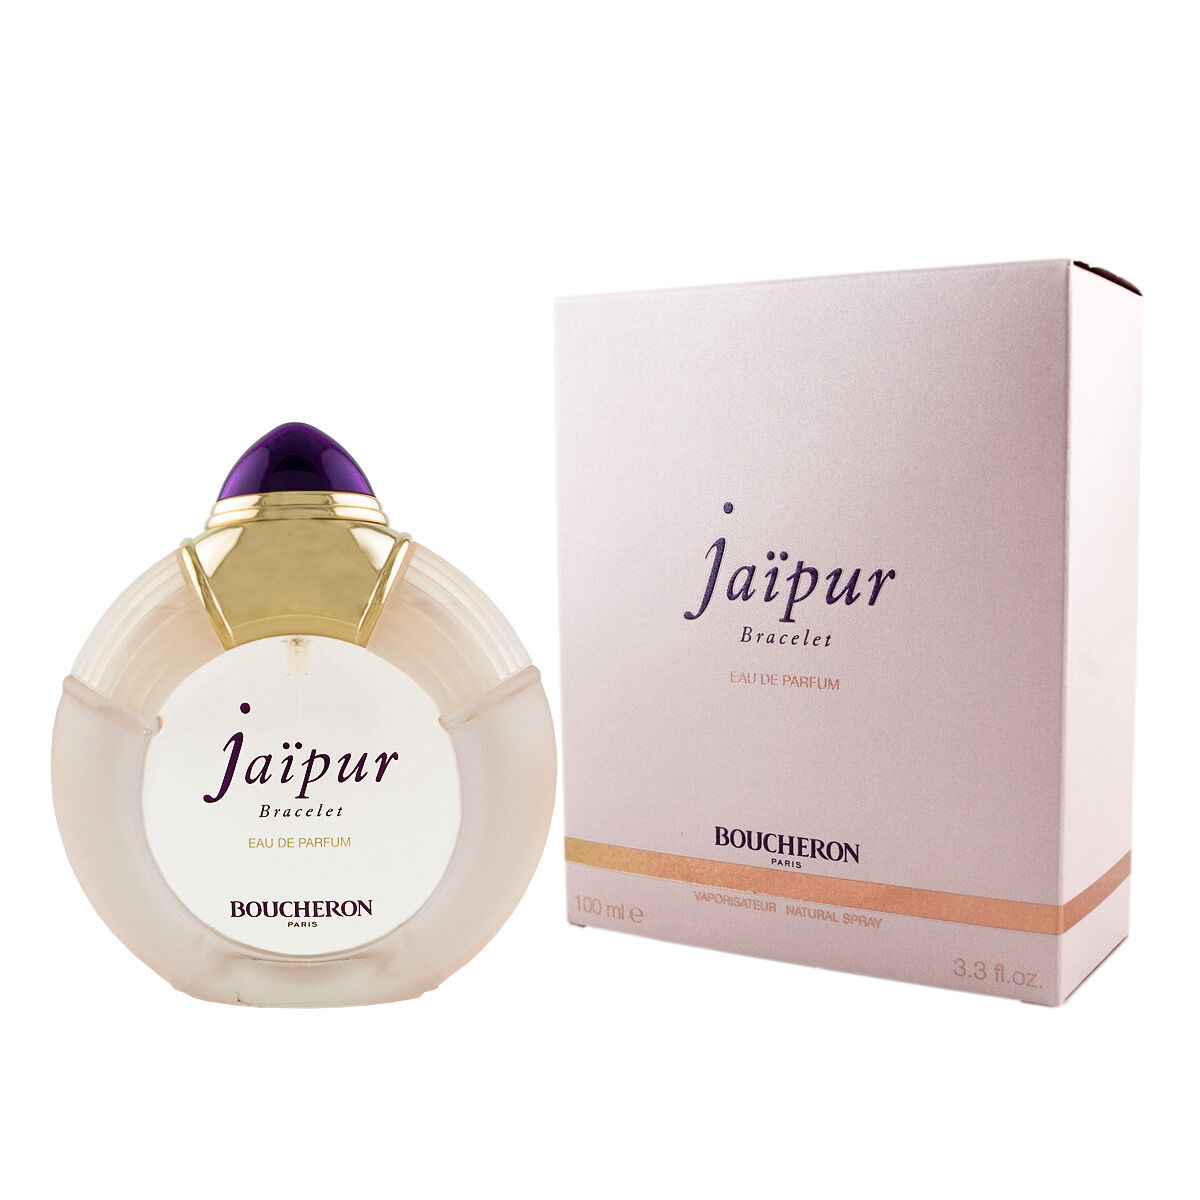 Dameparfume Boucheron EDP Jaipur Bracelet 100 ml